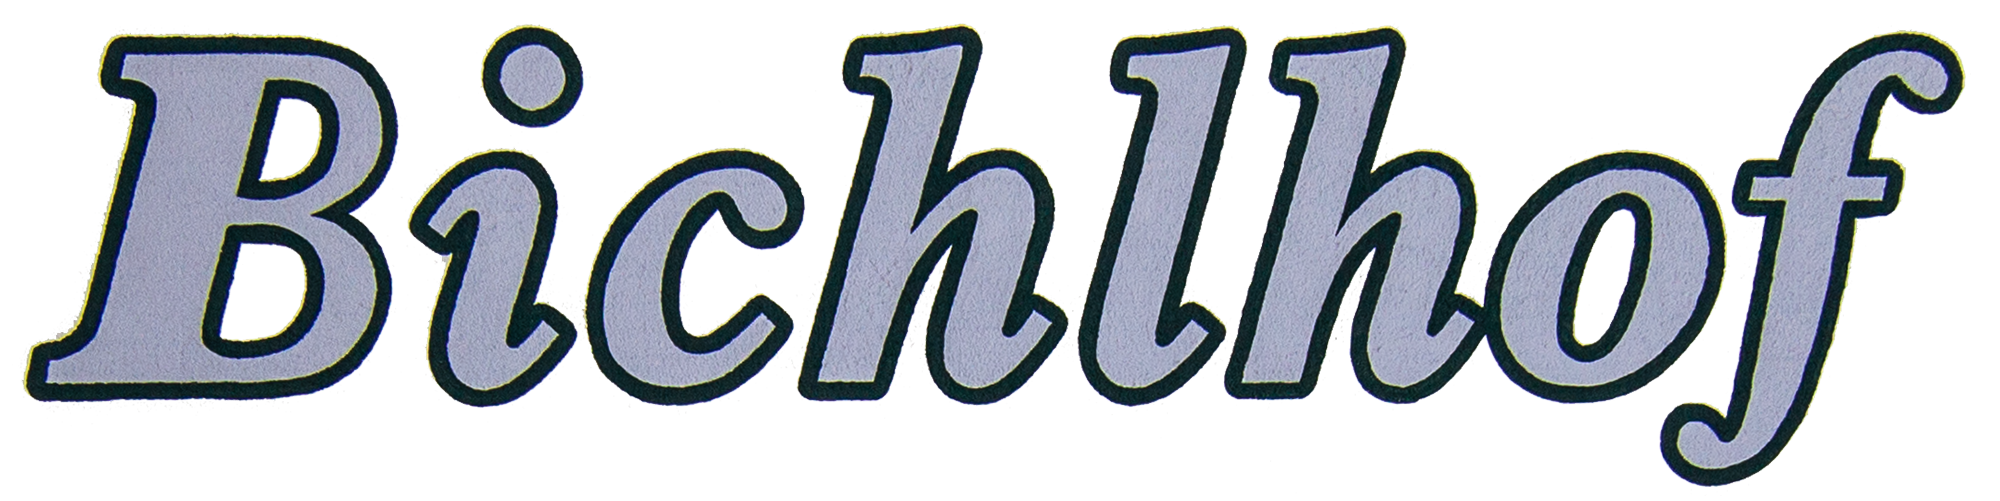 Bichlhof logo